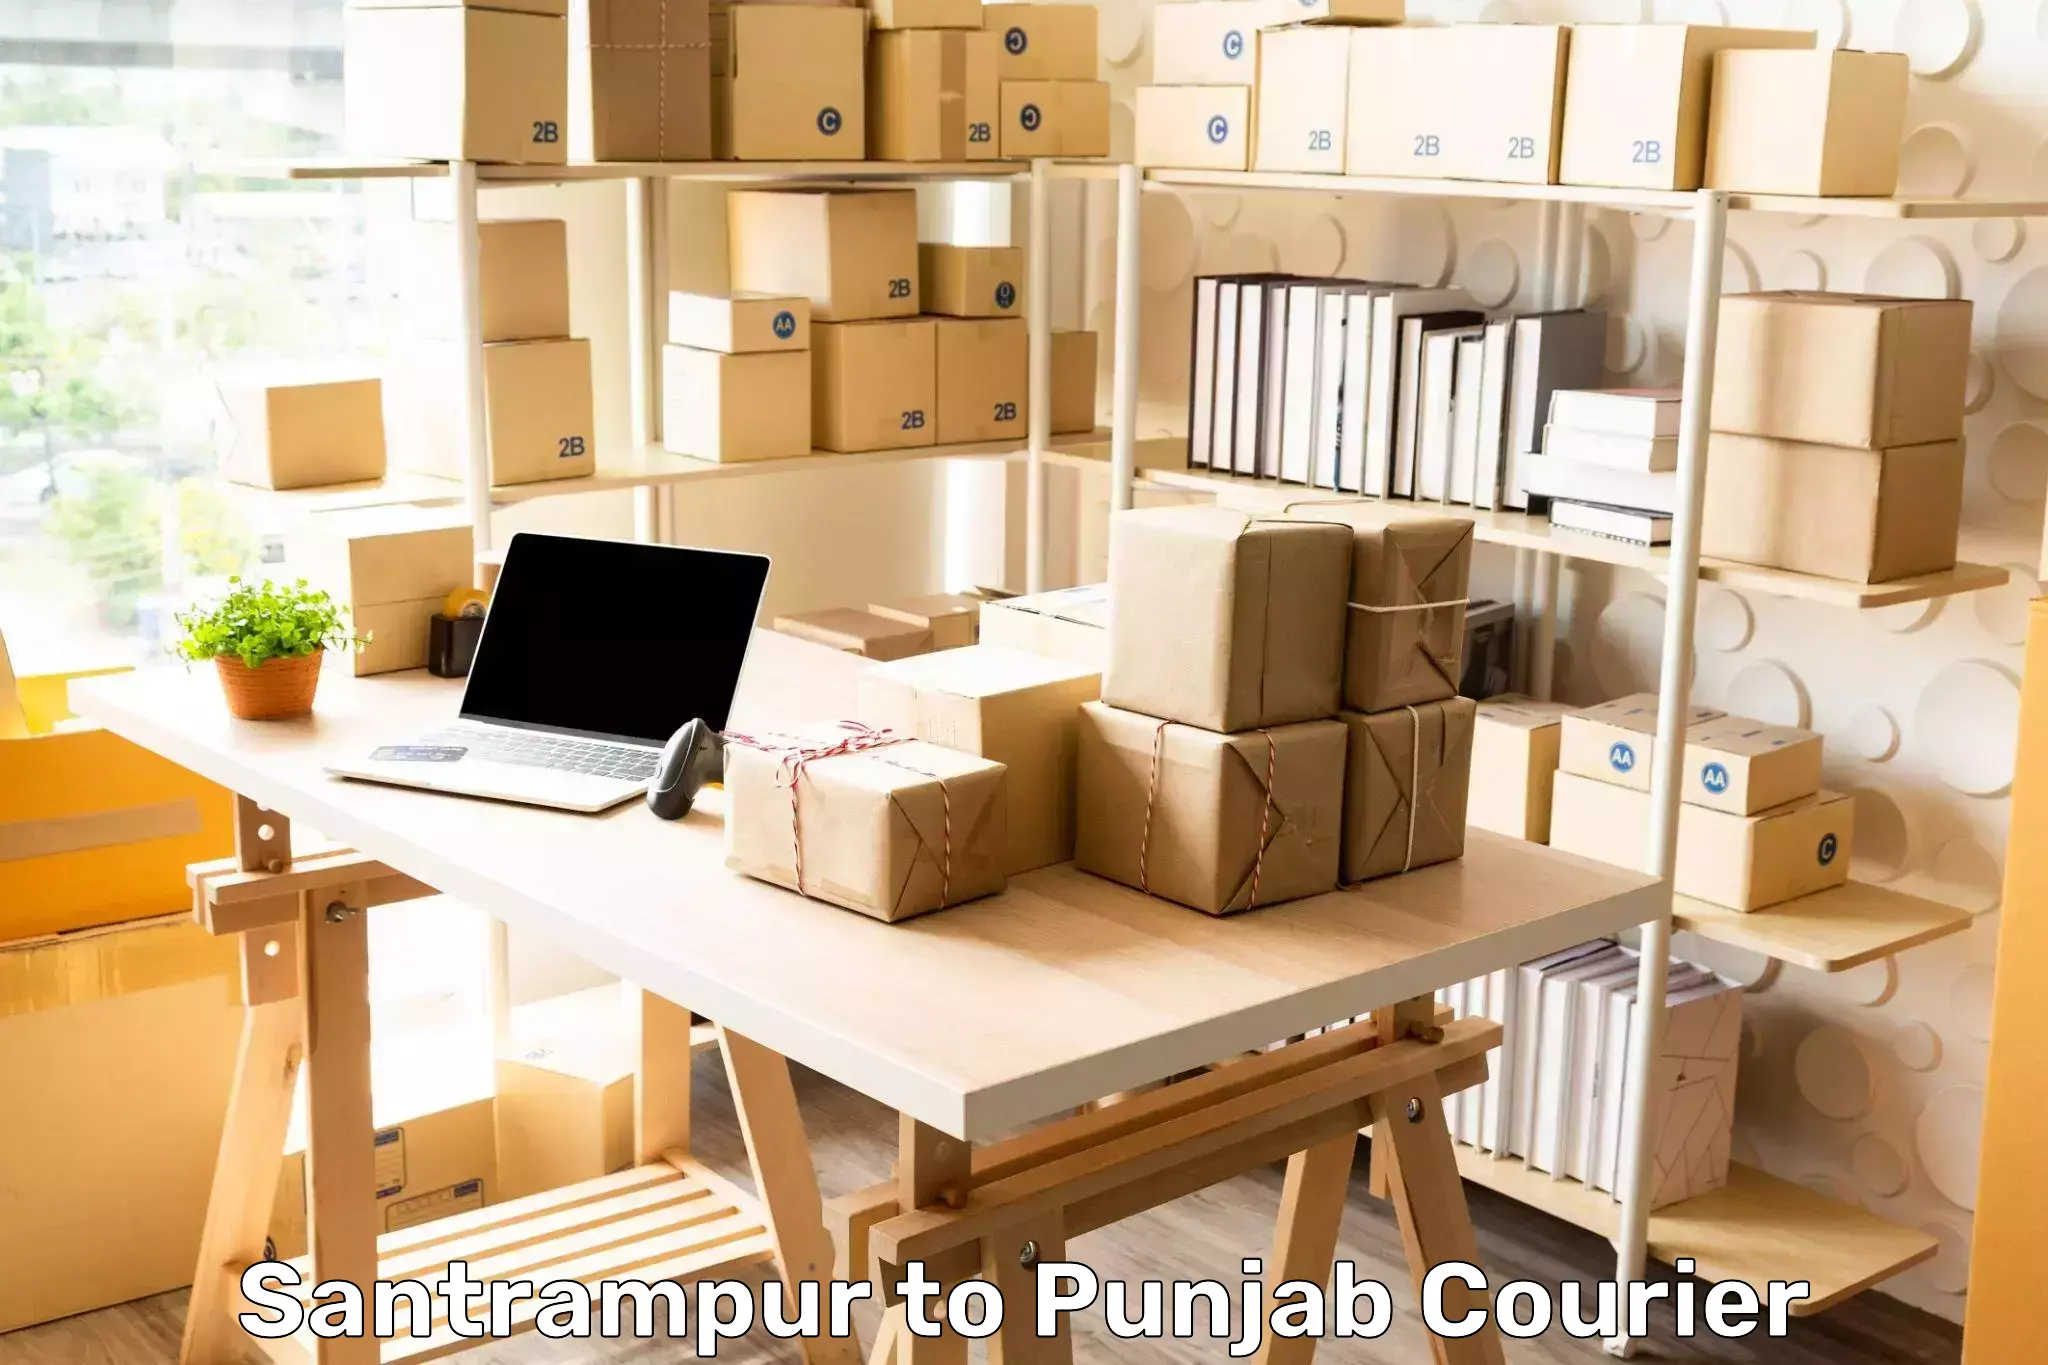 Nationwide parcel services Santrampur to Rupnagar